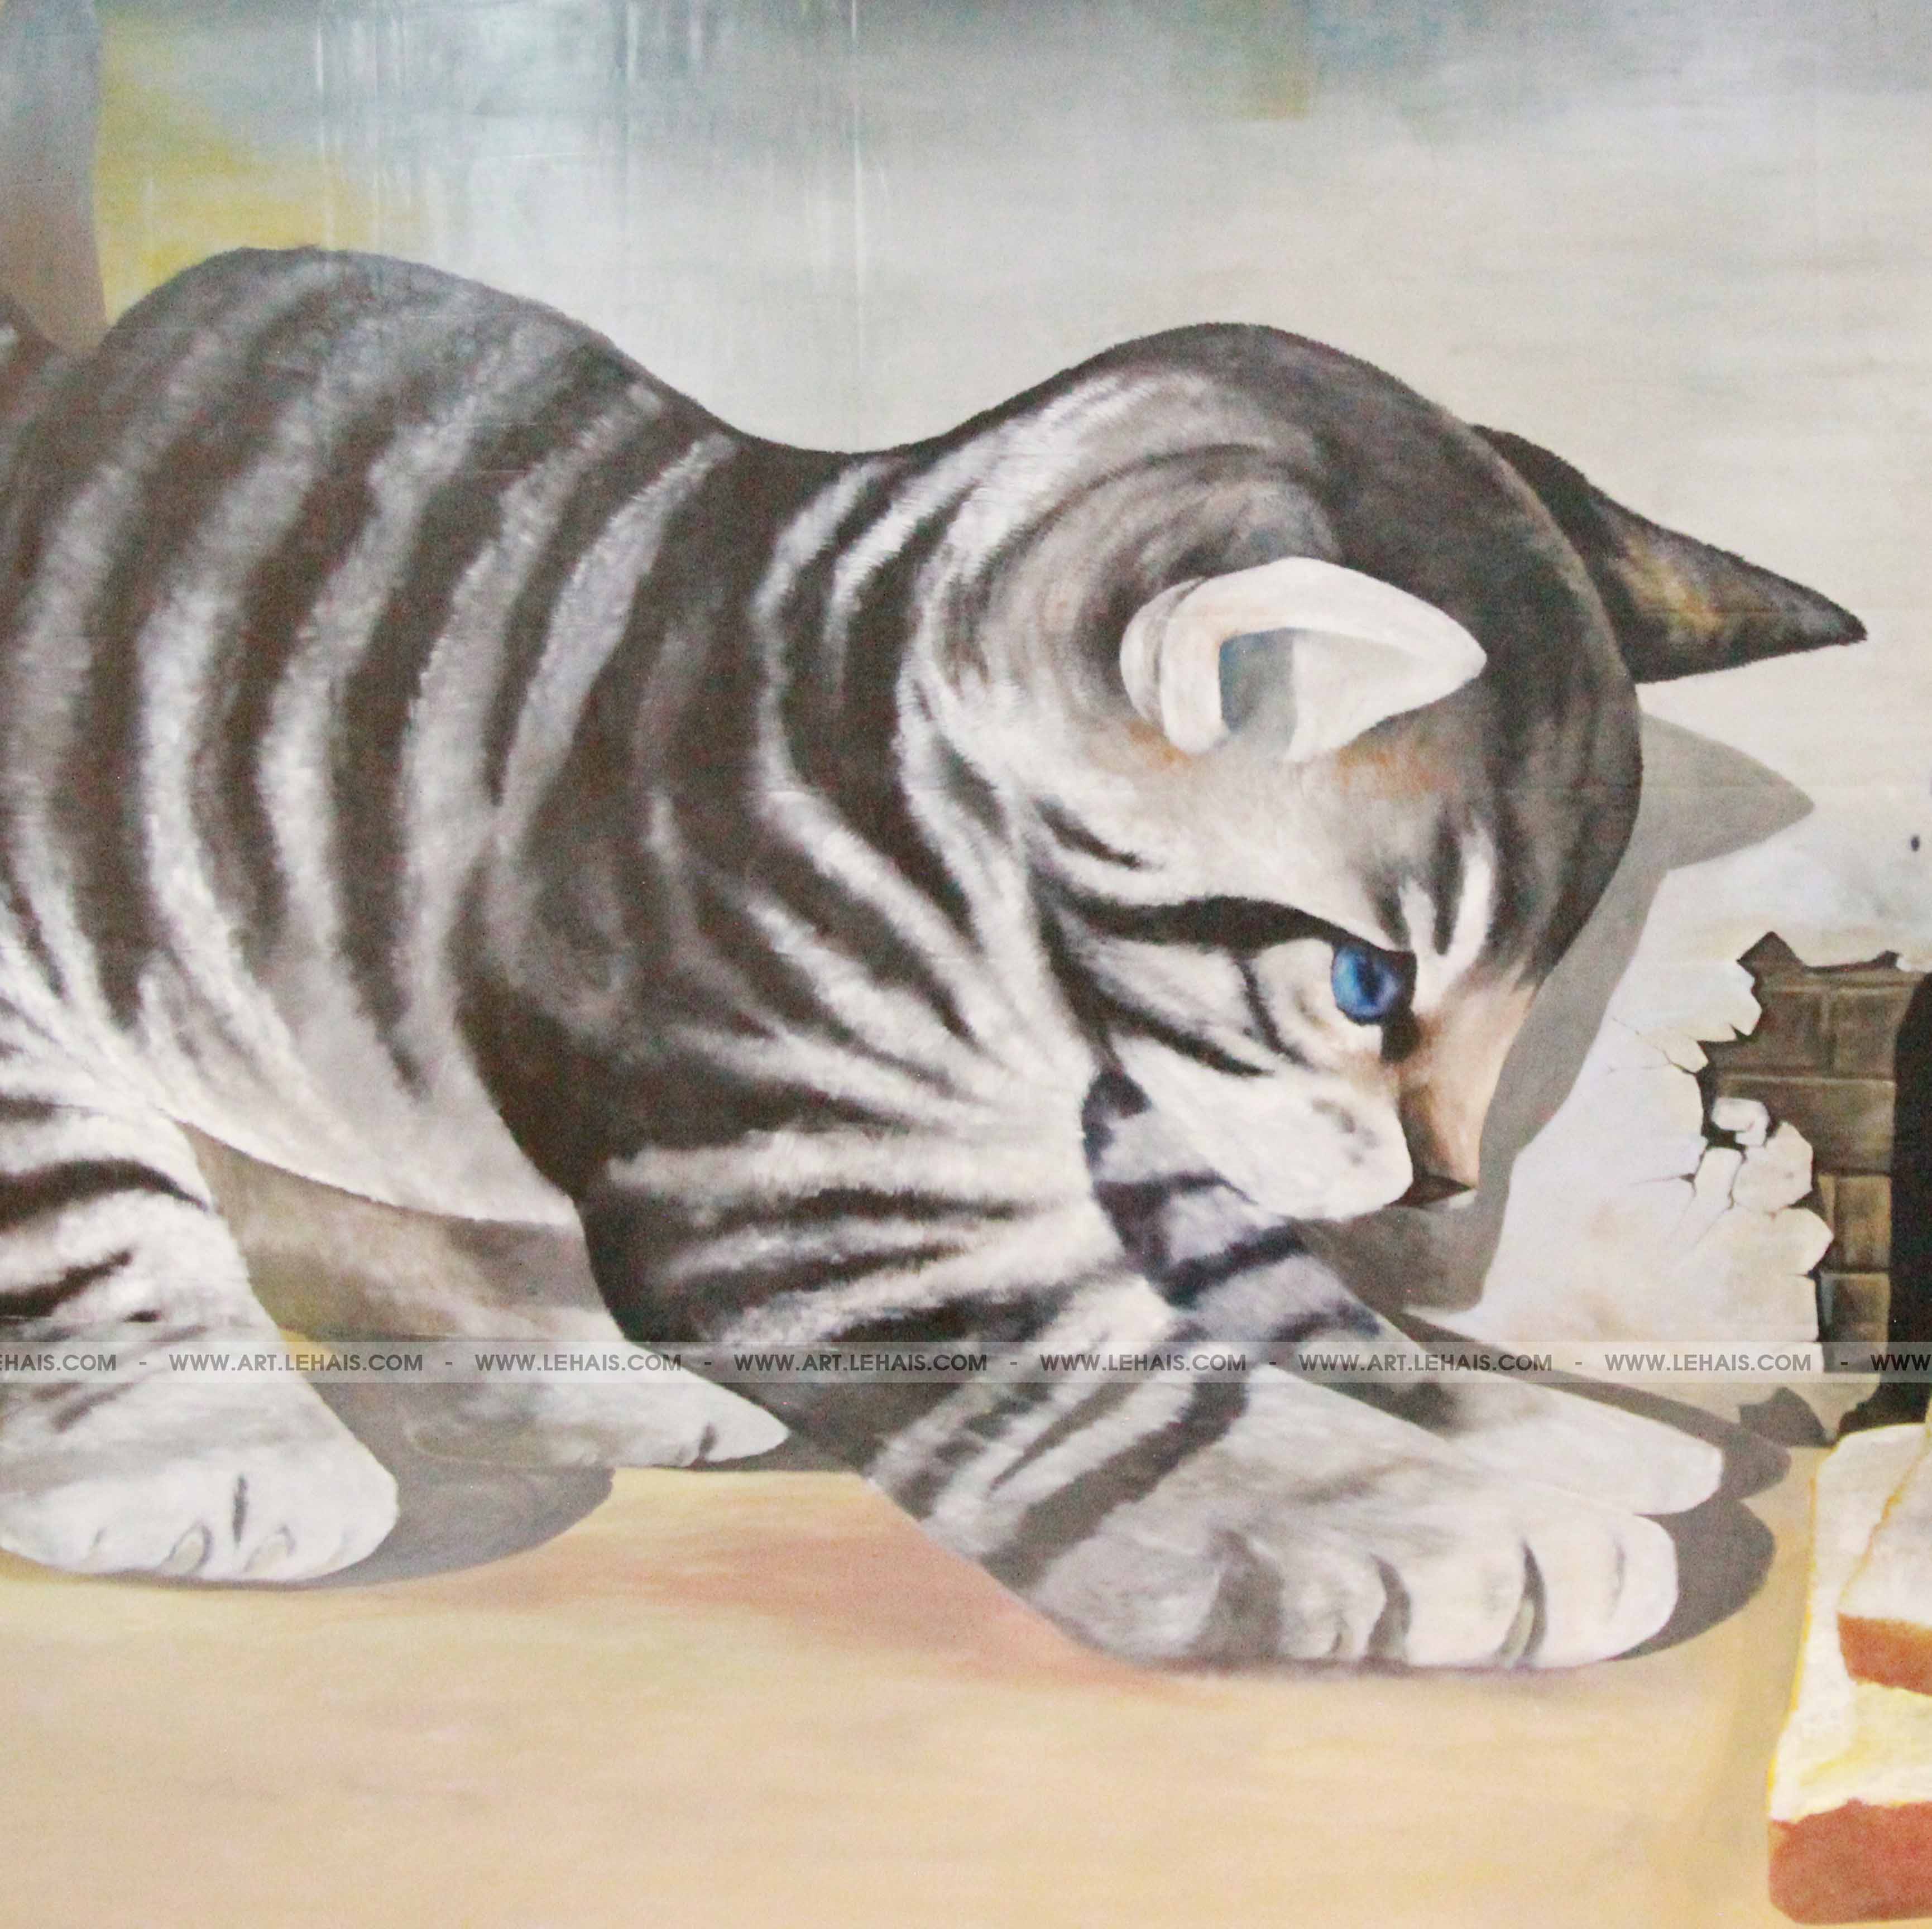 Mipec Long Biên, Hà Nội là nơi có những tác phẩm vẽ 3D tuyệt đẹp. Bức tranh 3D về những chú mèo khổng lồ chắc chắn sẽ khiến bạn thích thú. Hãy đến Mipec Long Biên để chiêm ngưỡng những bức tranh tuyệt vời này.